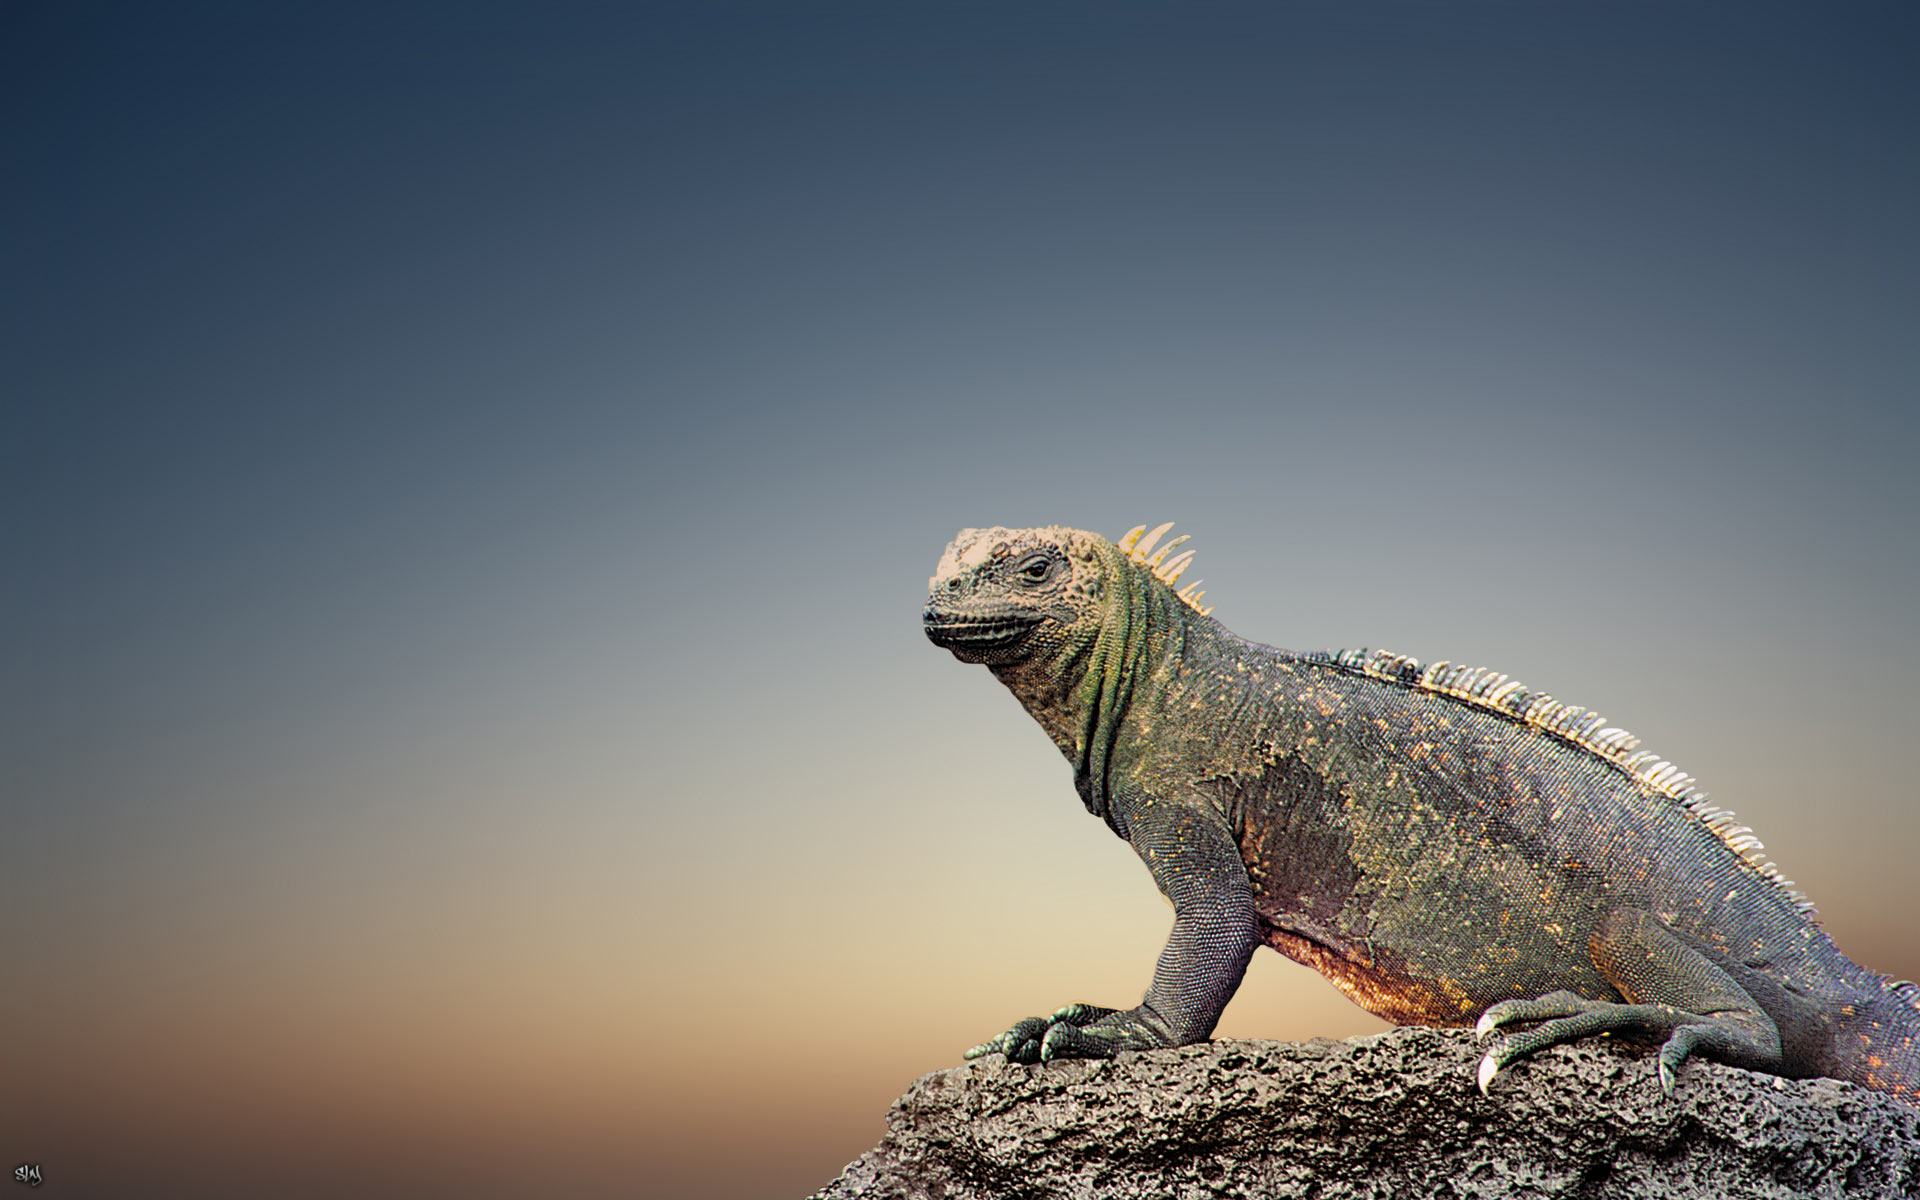 Descarga gratuita de fondo de pantalla para móvil de Iguana, Lagarto, Reptiles, Animales.